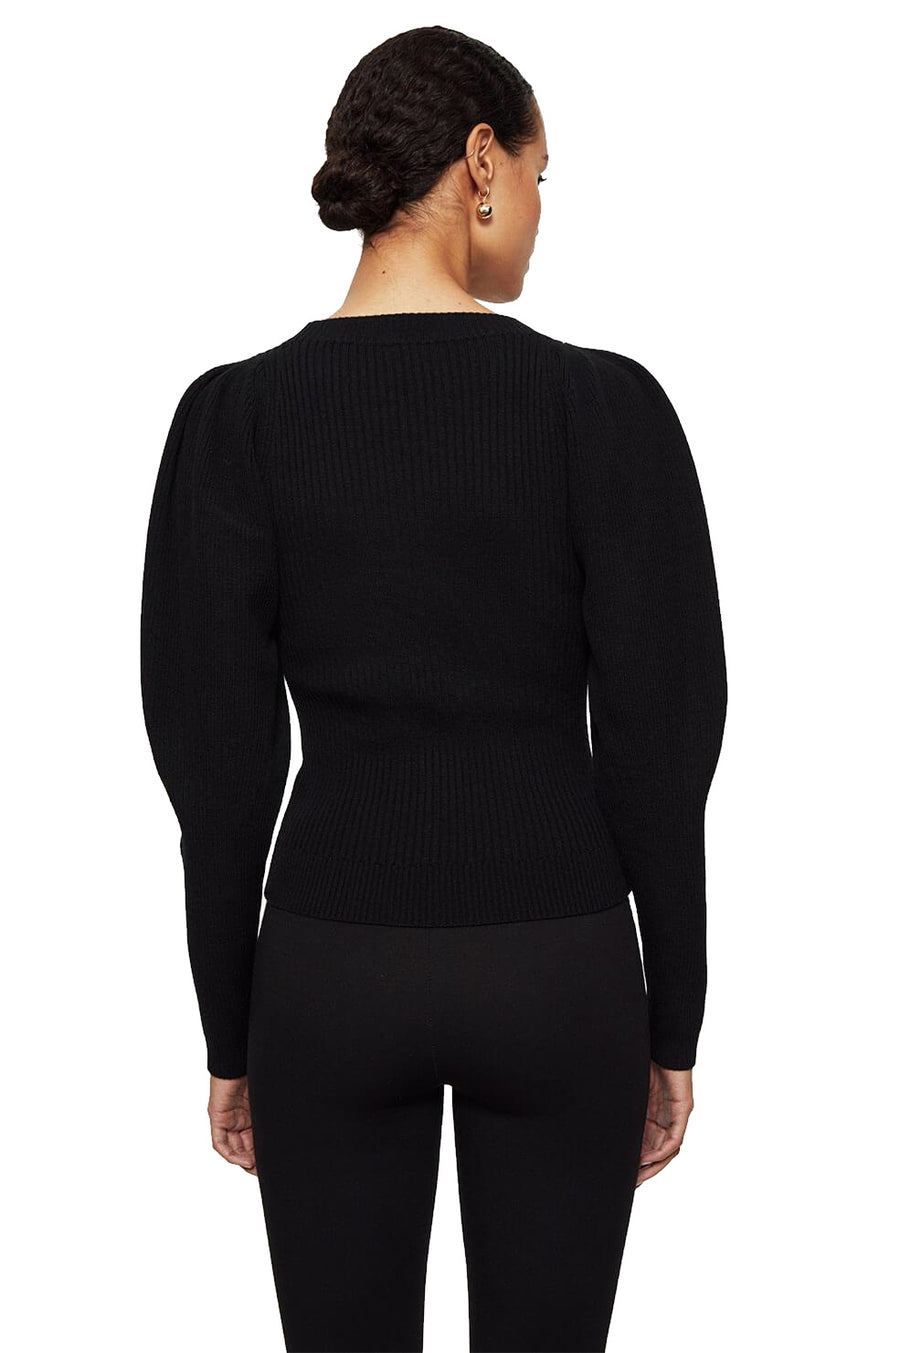 Rowan Sweater - Shop Yu Fashion